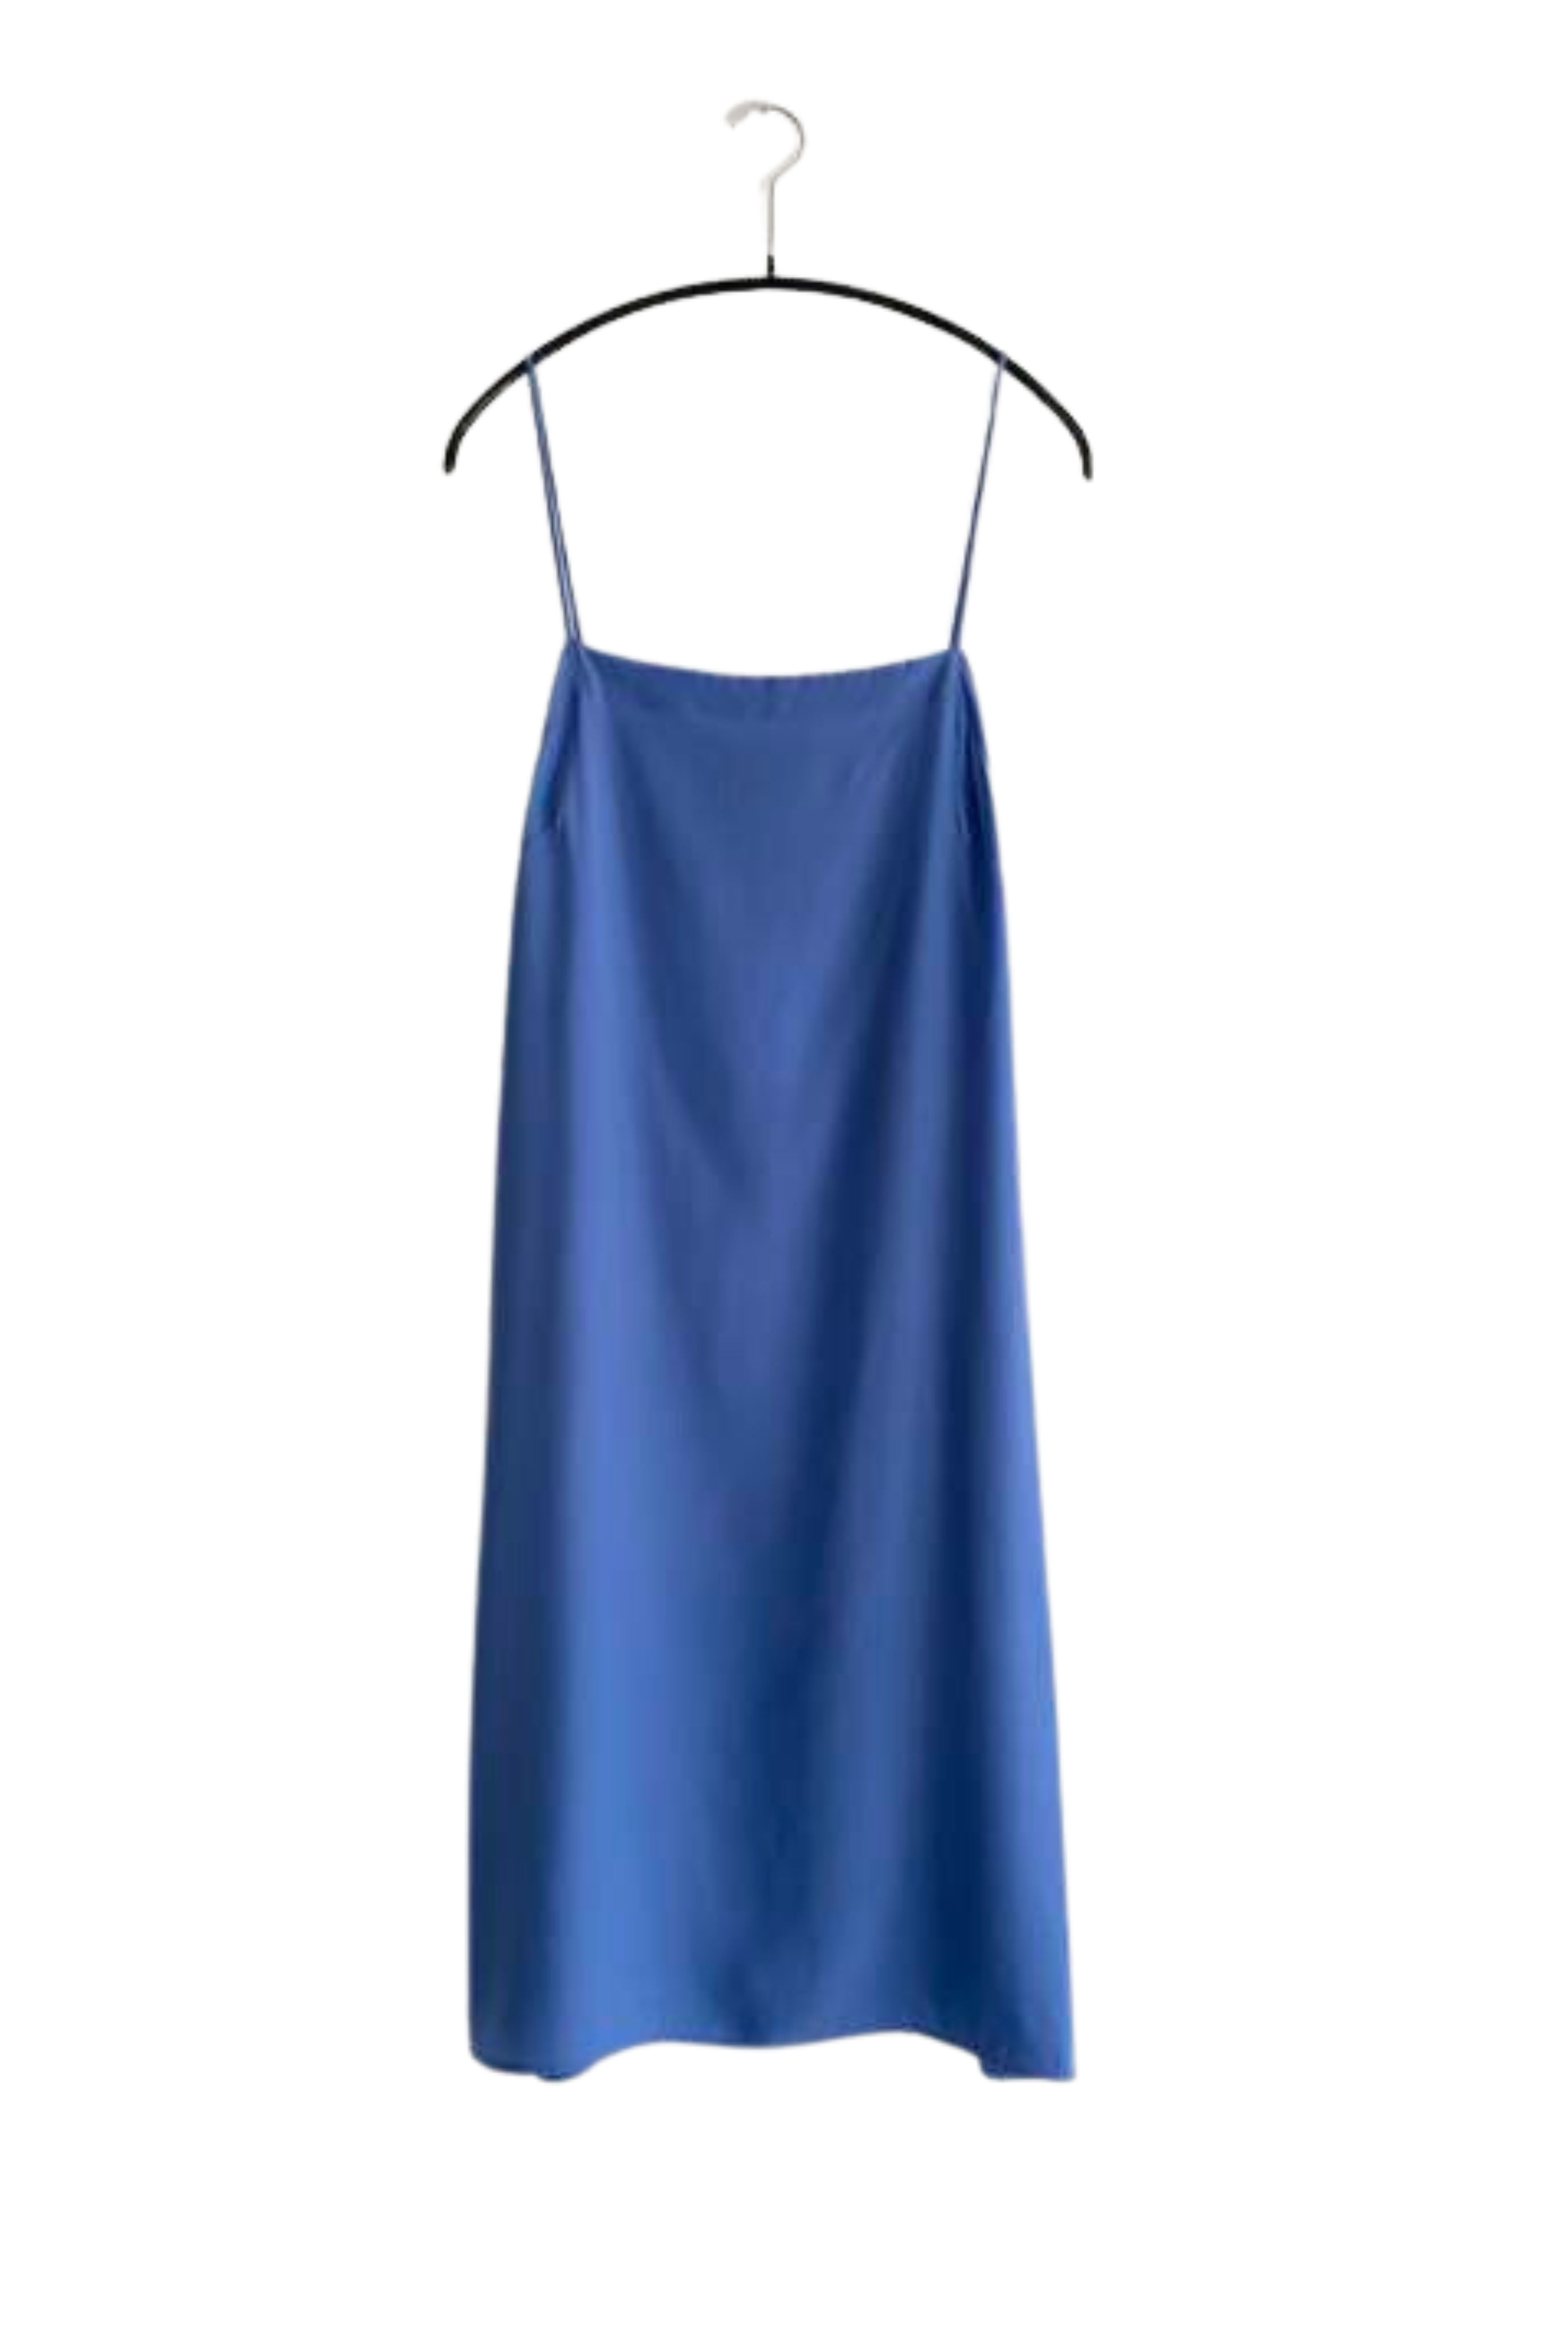 KAMPERETT Short Silk Slip Dress in Cornflower